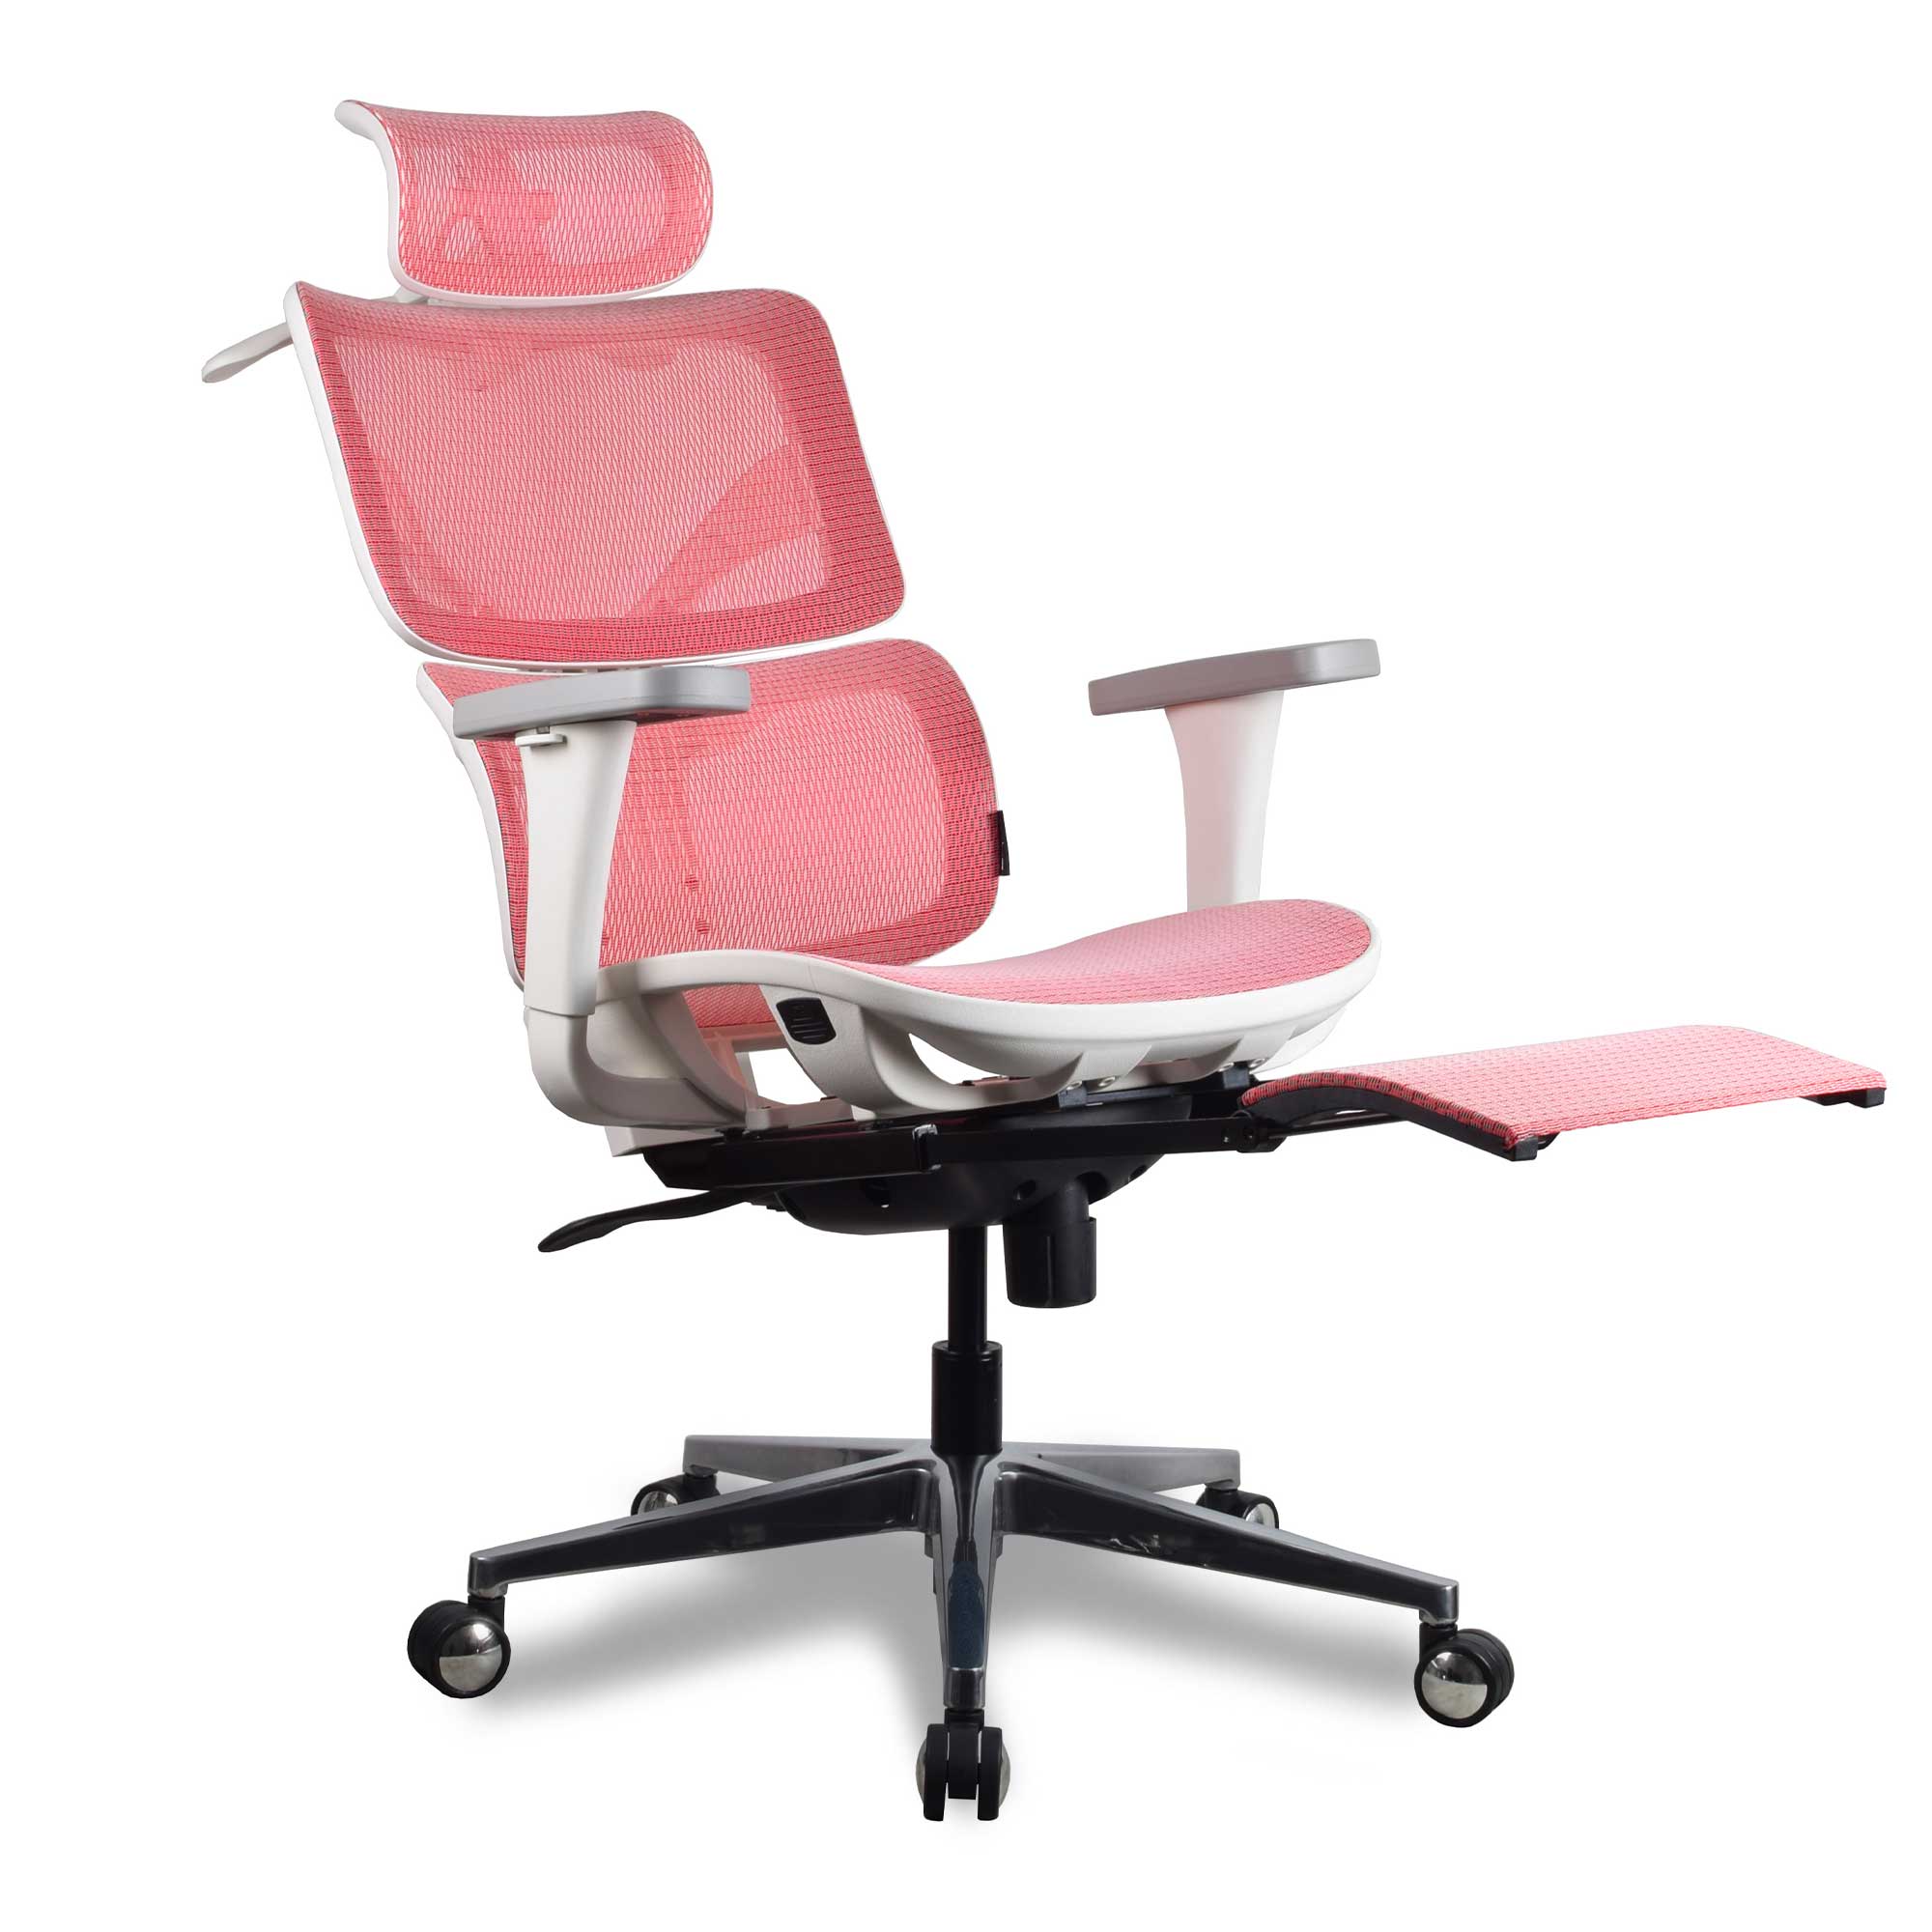 Chaise ergonomique de bureau - TERRANA Mousse et Maille